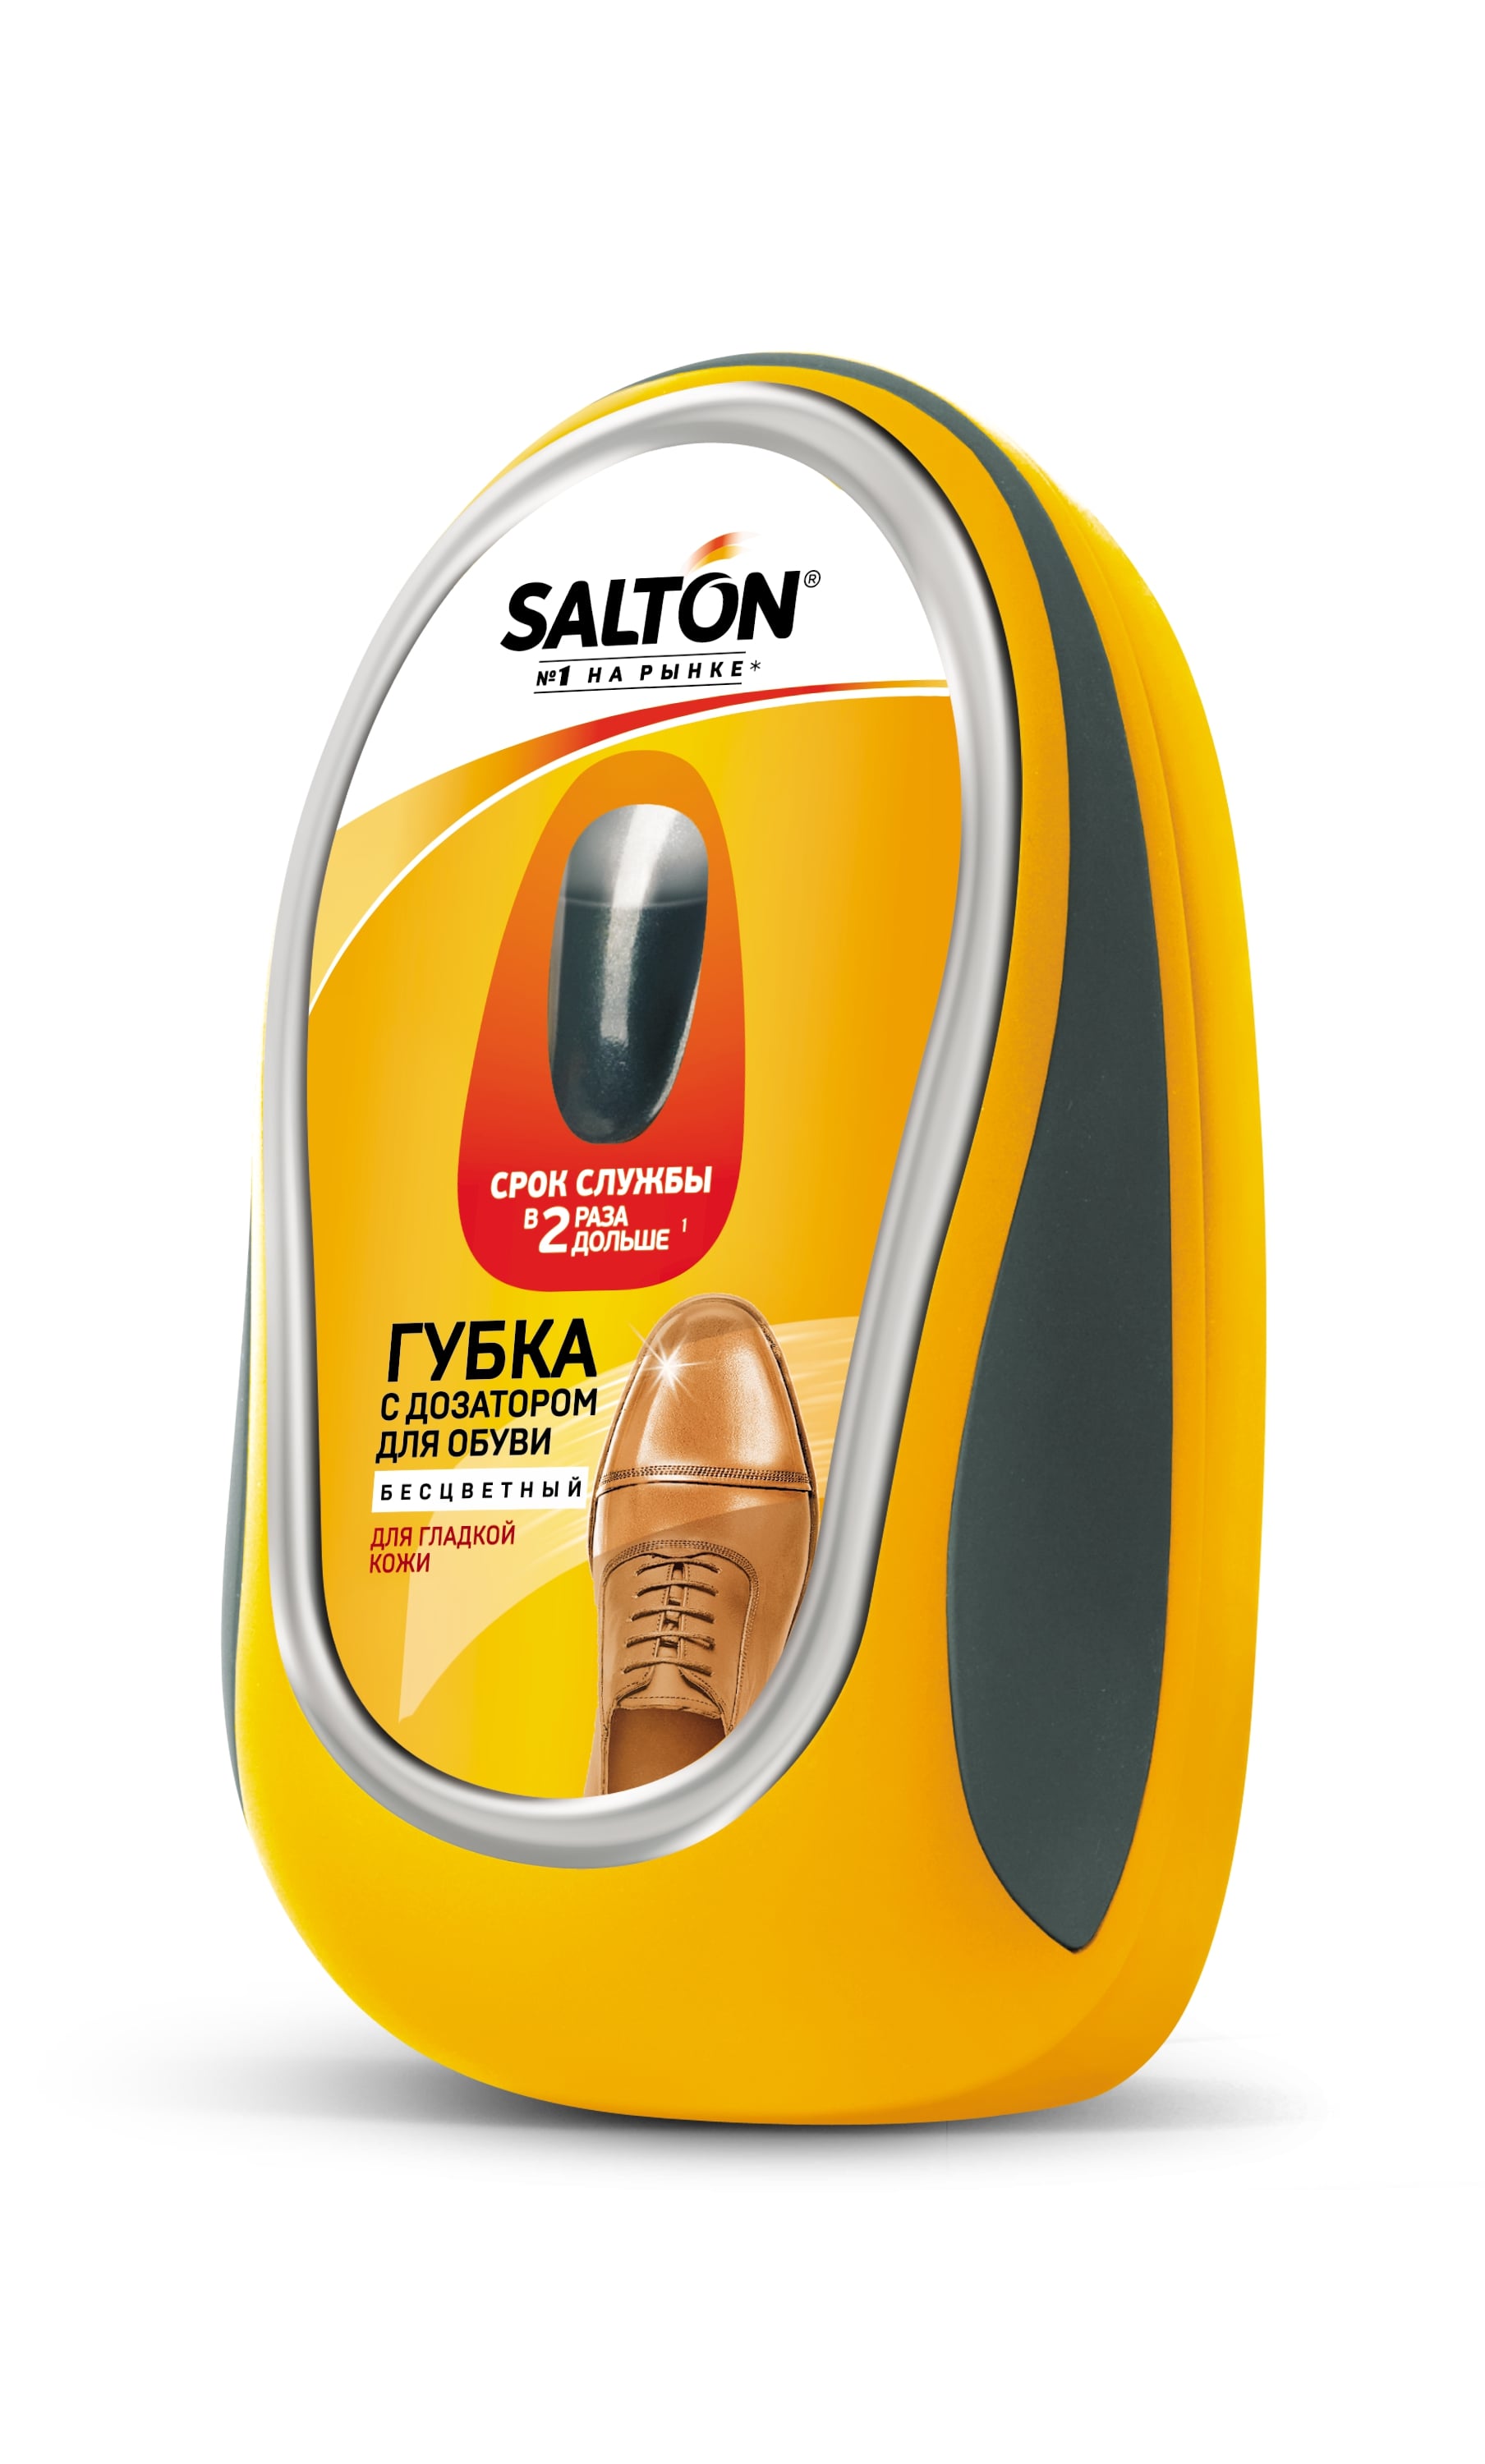 Губка Salton, c дозатором, для обуви из гладкой кожи, 7 мл, бесцветный (52/34) - фото 1